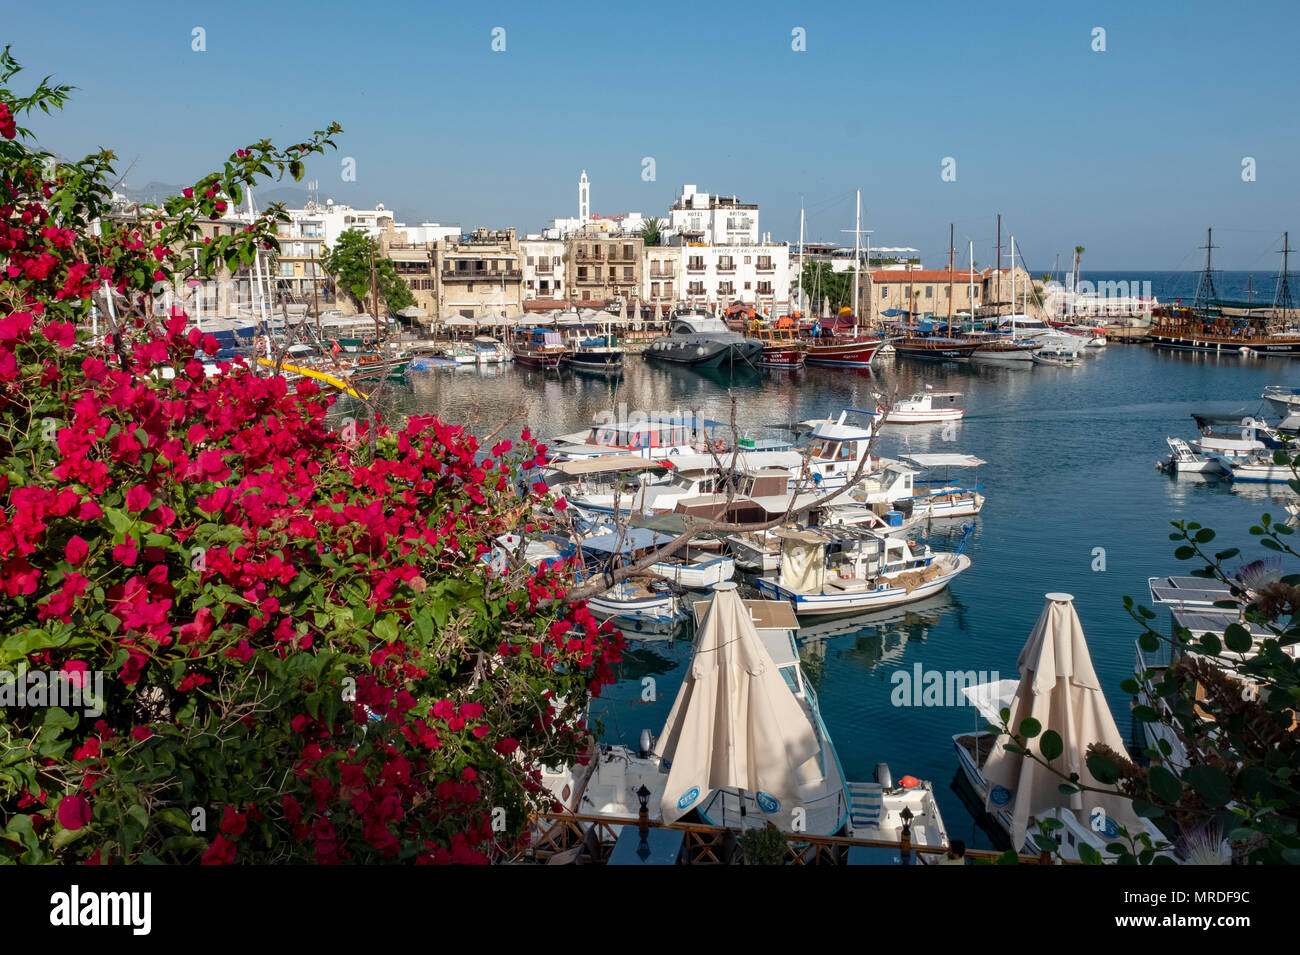 Vue sur le port de Kyrenia (Girne) : turque du nord de Chypre Banque D'Images